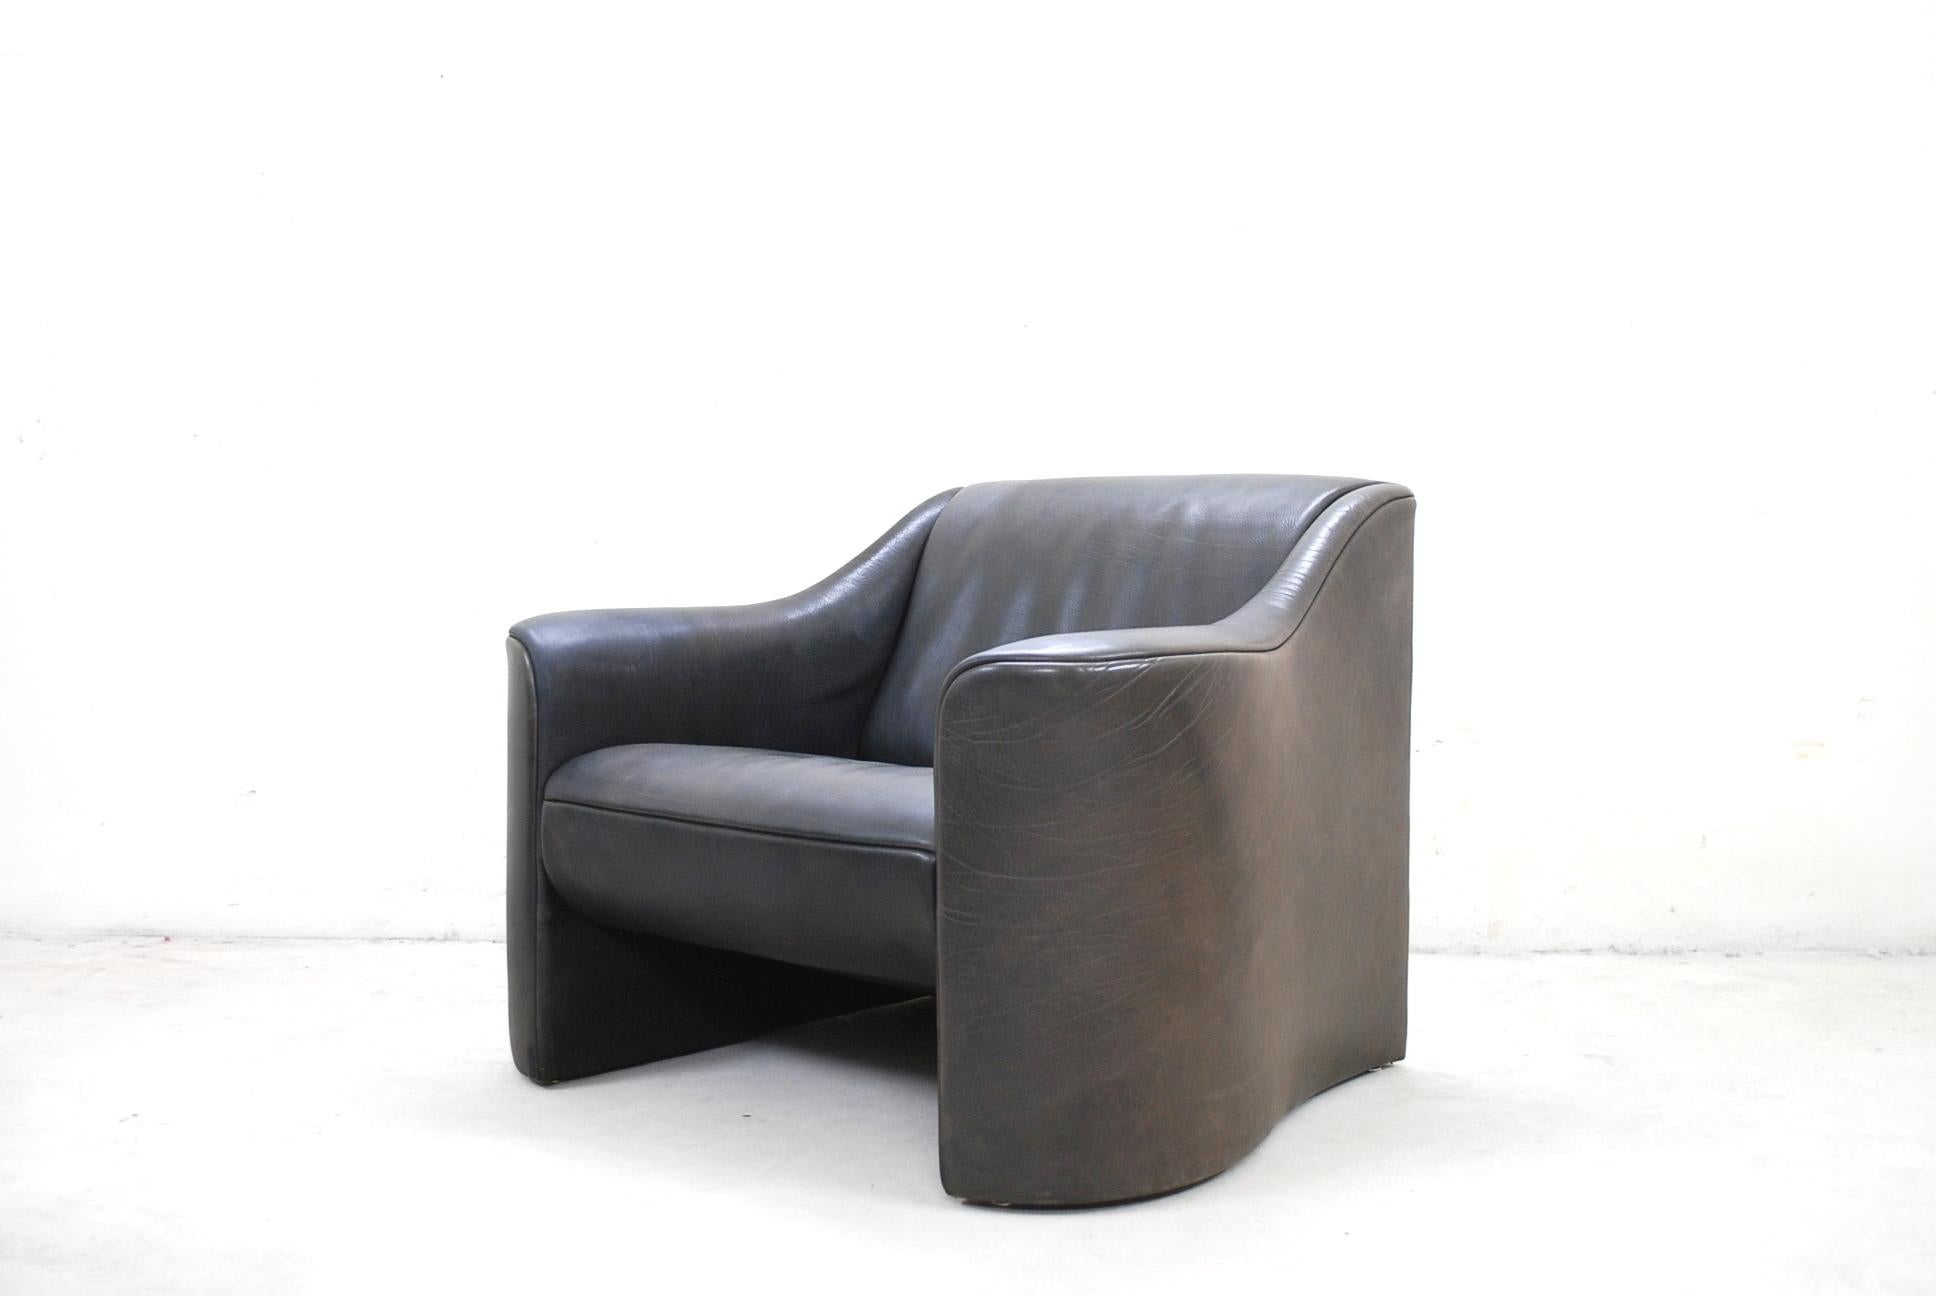 Ce fauteuil modèle esquire a été conçu par Luigi Massoni & Giorgio Cazzaniga pour Matteo Grassi.
Il est revêtu d'un épais cuir de cou brun foncé. Avec patine sur les accoudoirs.
La forme est comme une sculpture et les courbes sont magnifiques.
Un